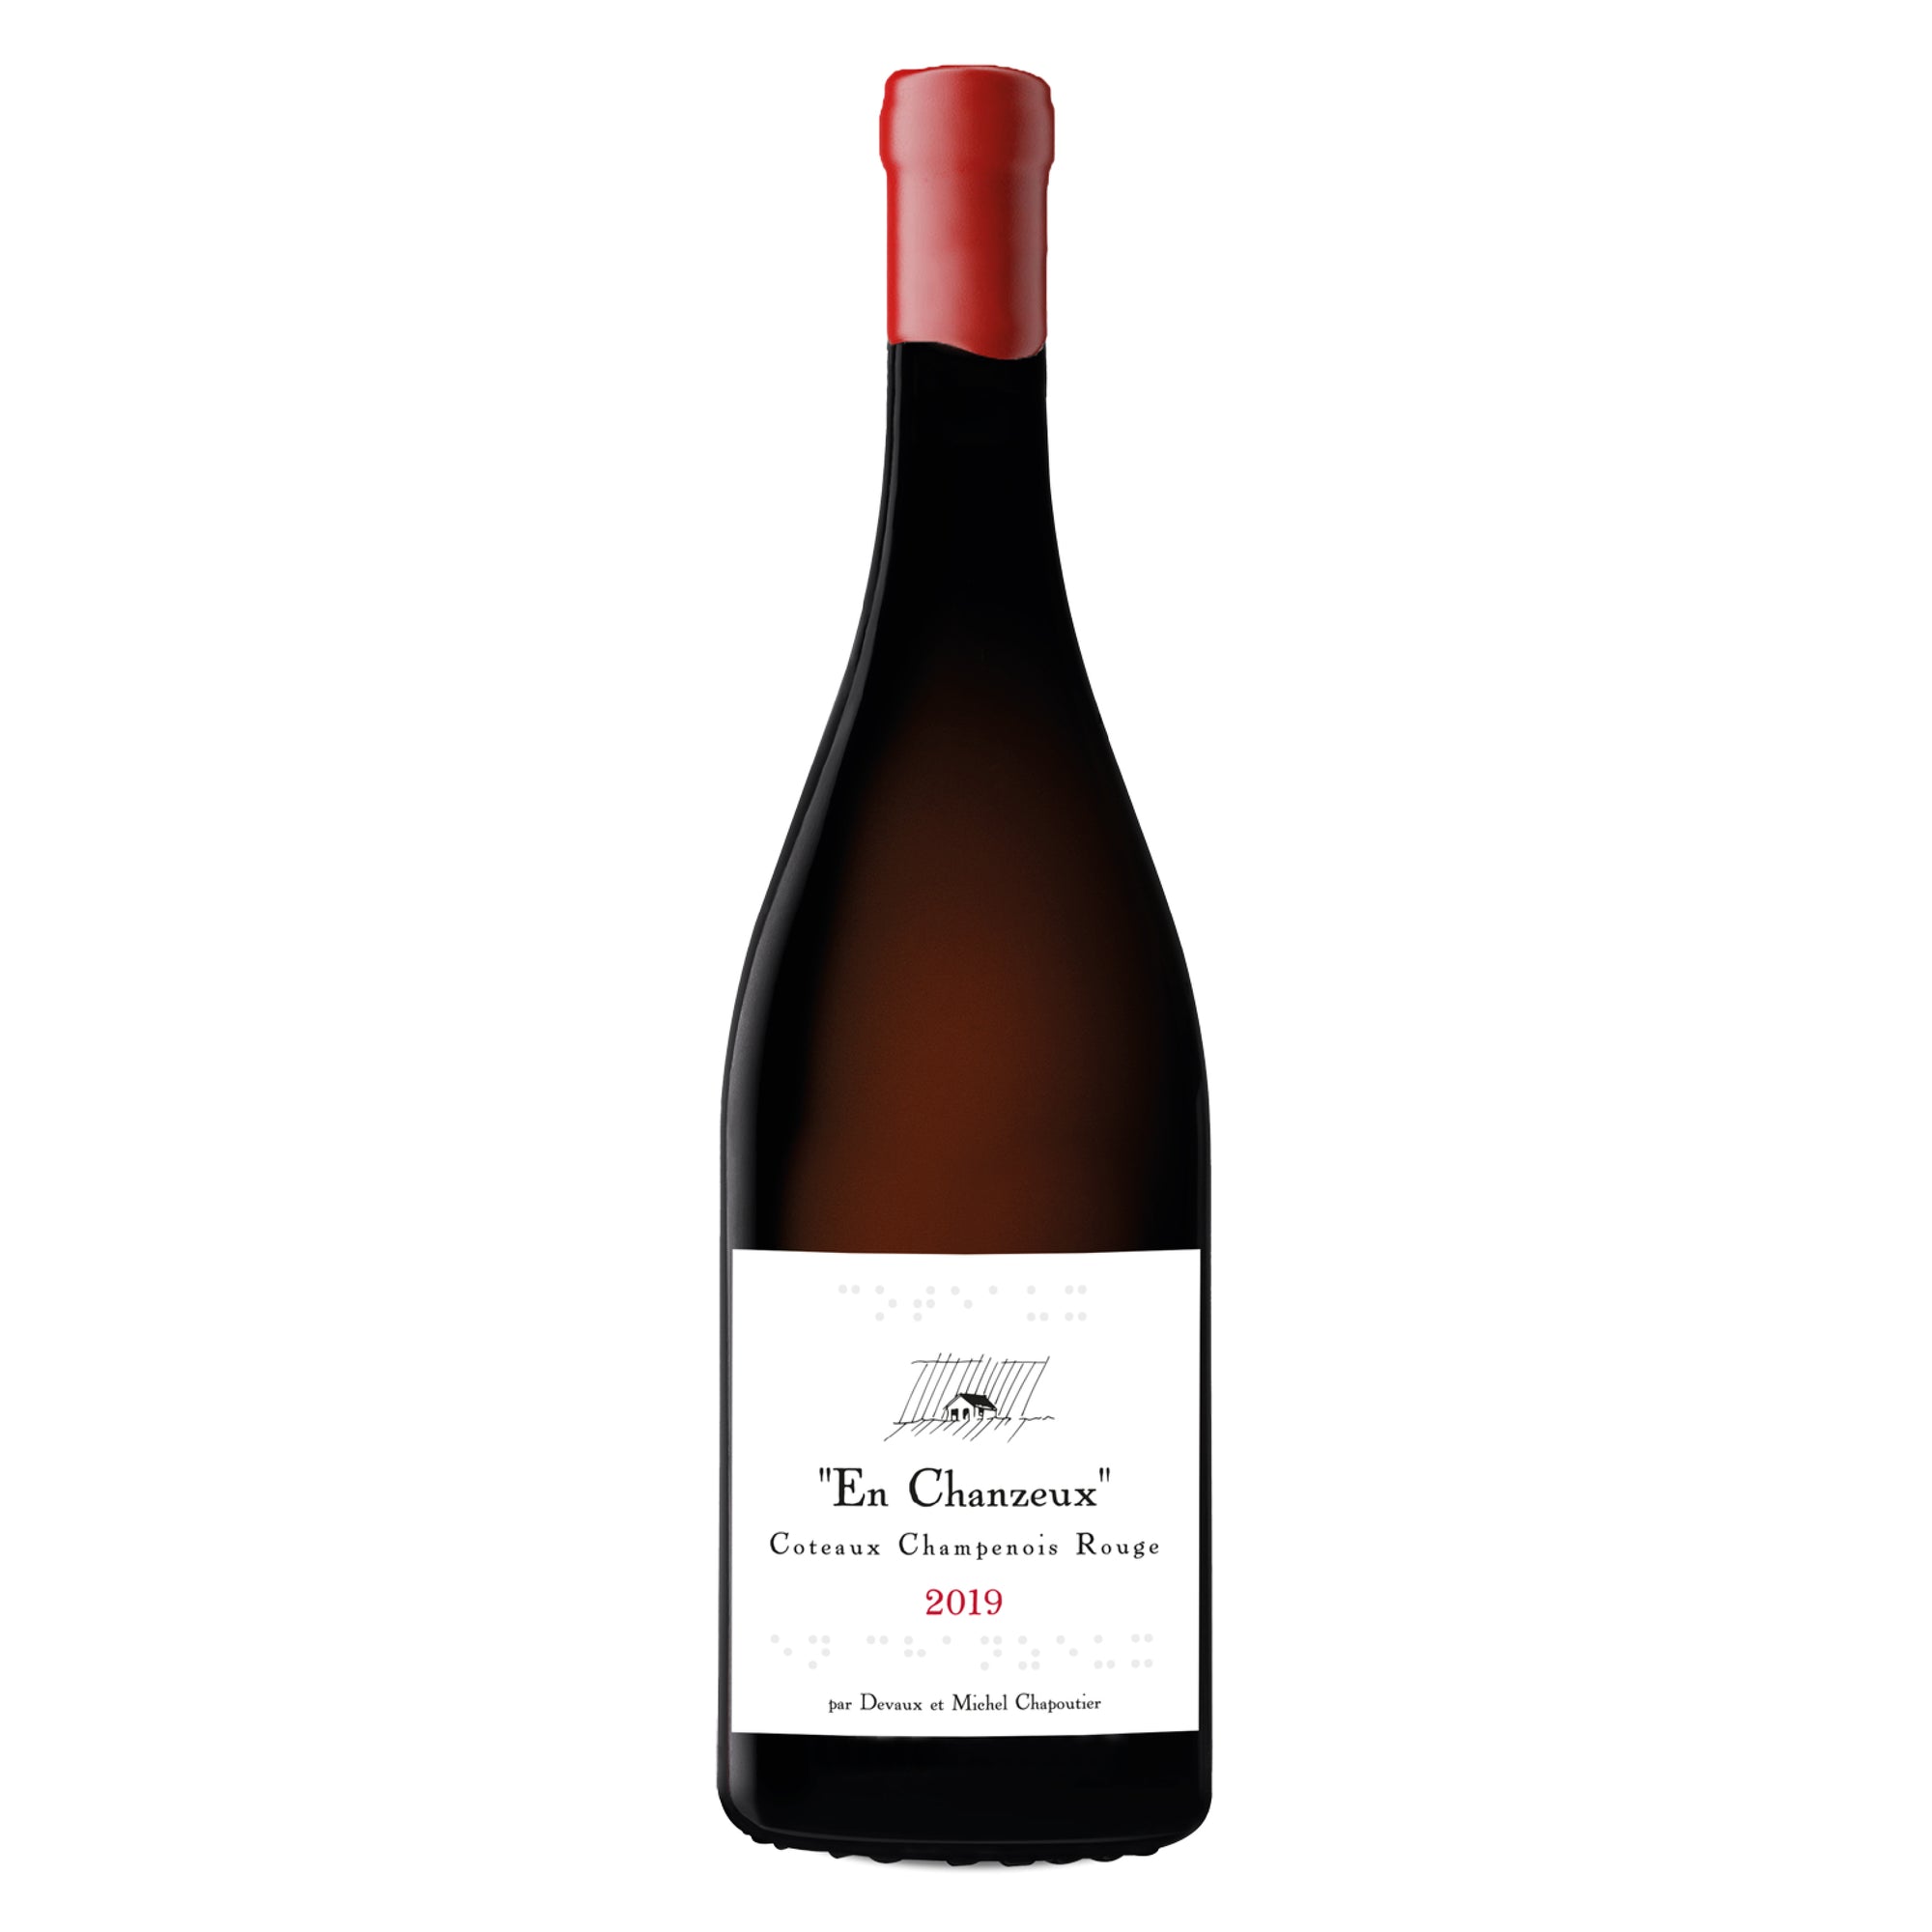 DEVAUX & M. CHAPOUTIER Coteaux Champenois "En Chanzeux" 2019 (Still Wine)